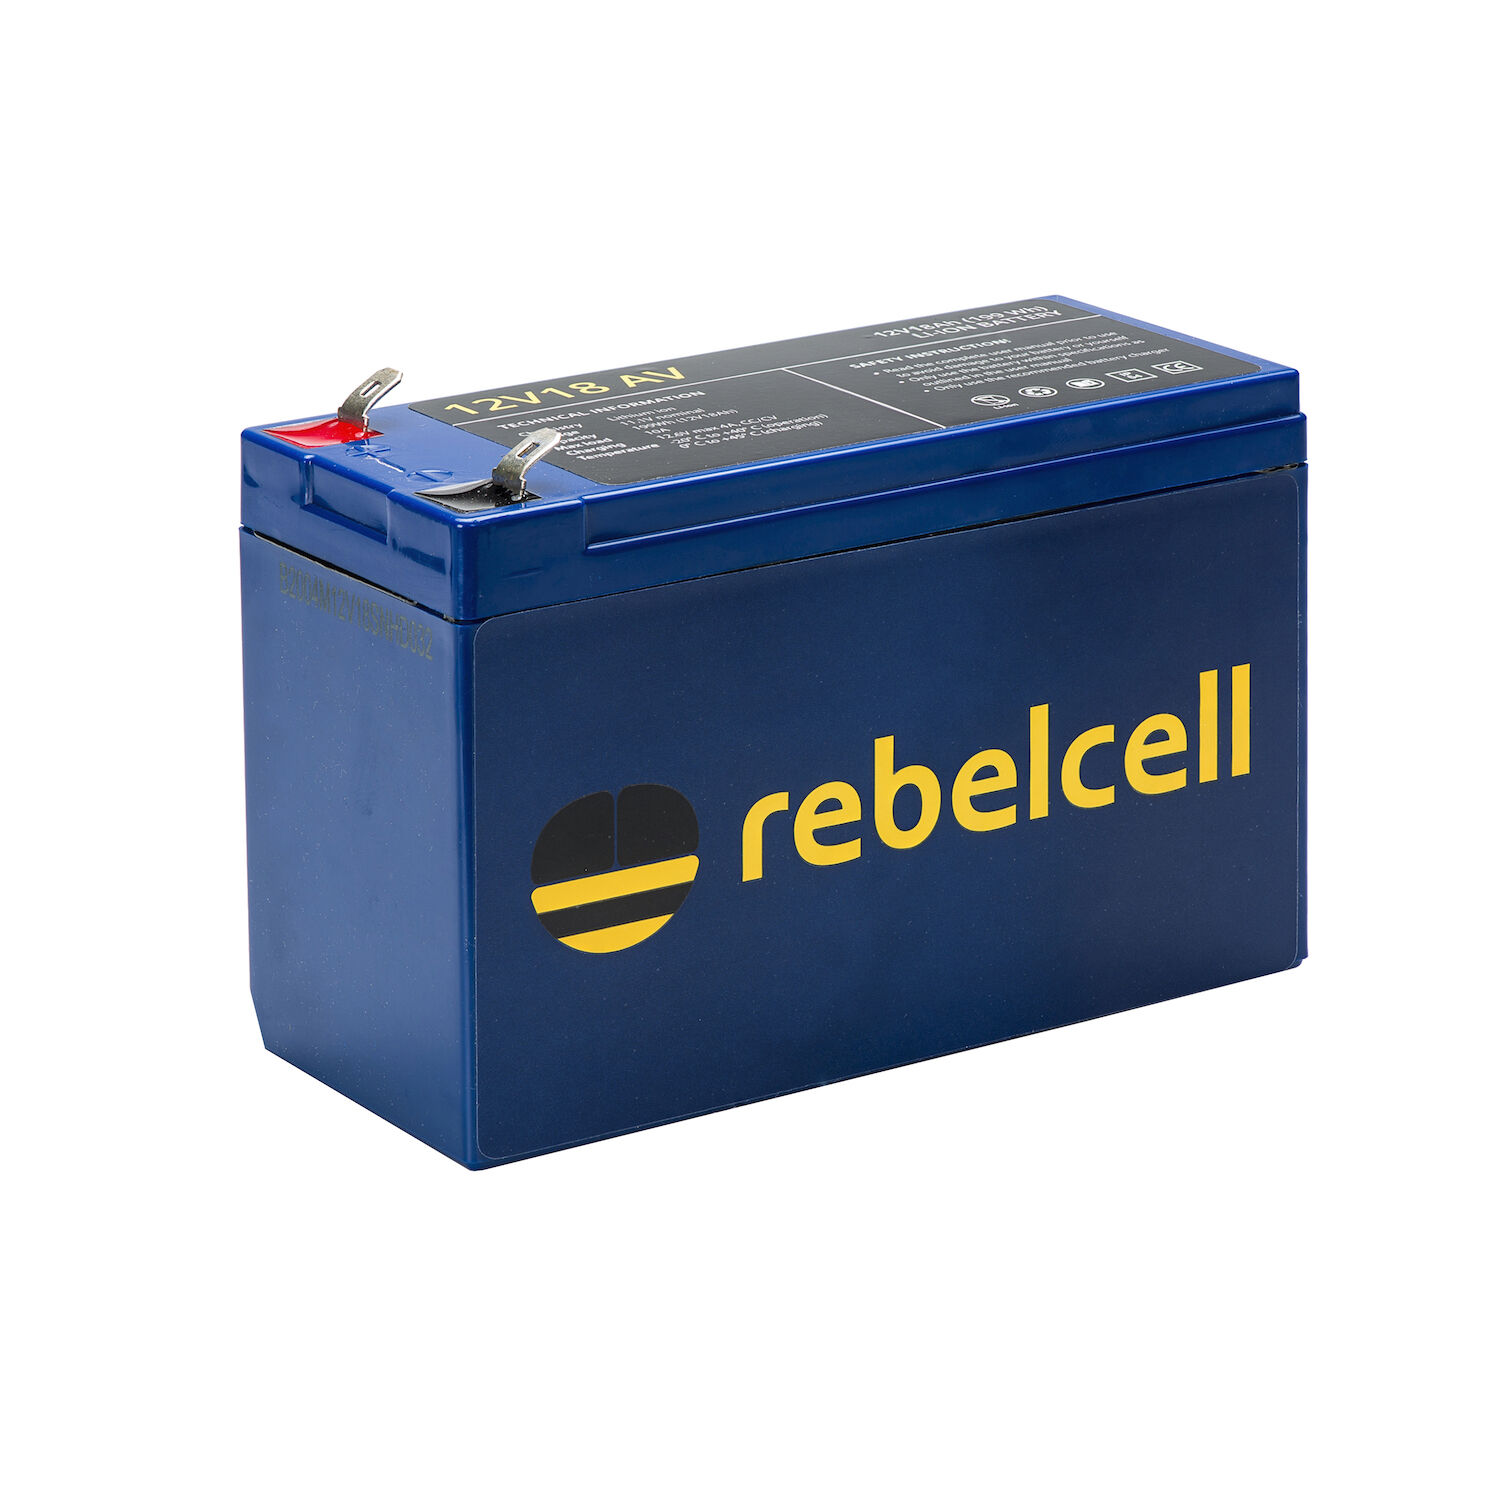 RebelCell 12V07 AV Lithium Batterie (12V 7Ah) 87Wh